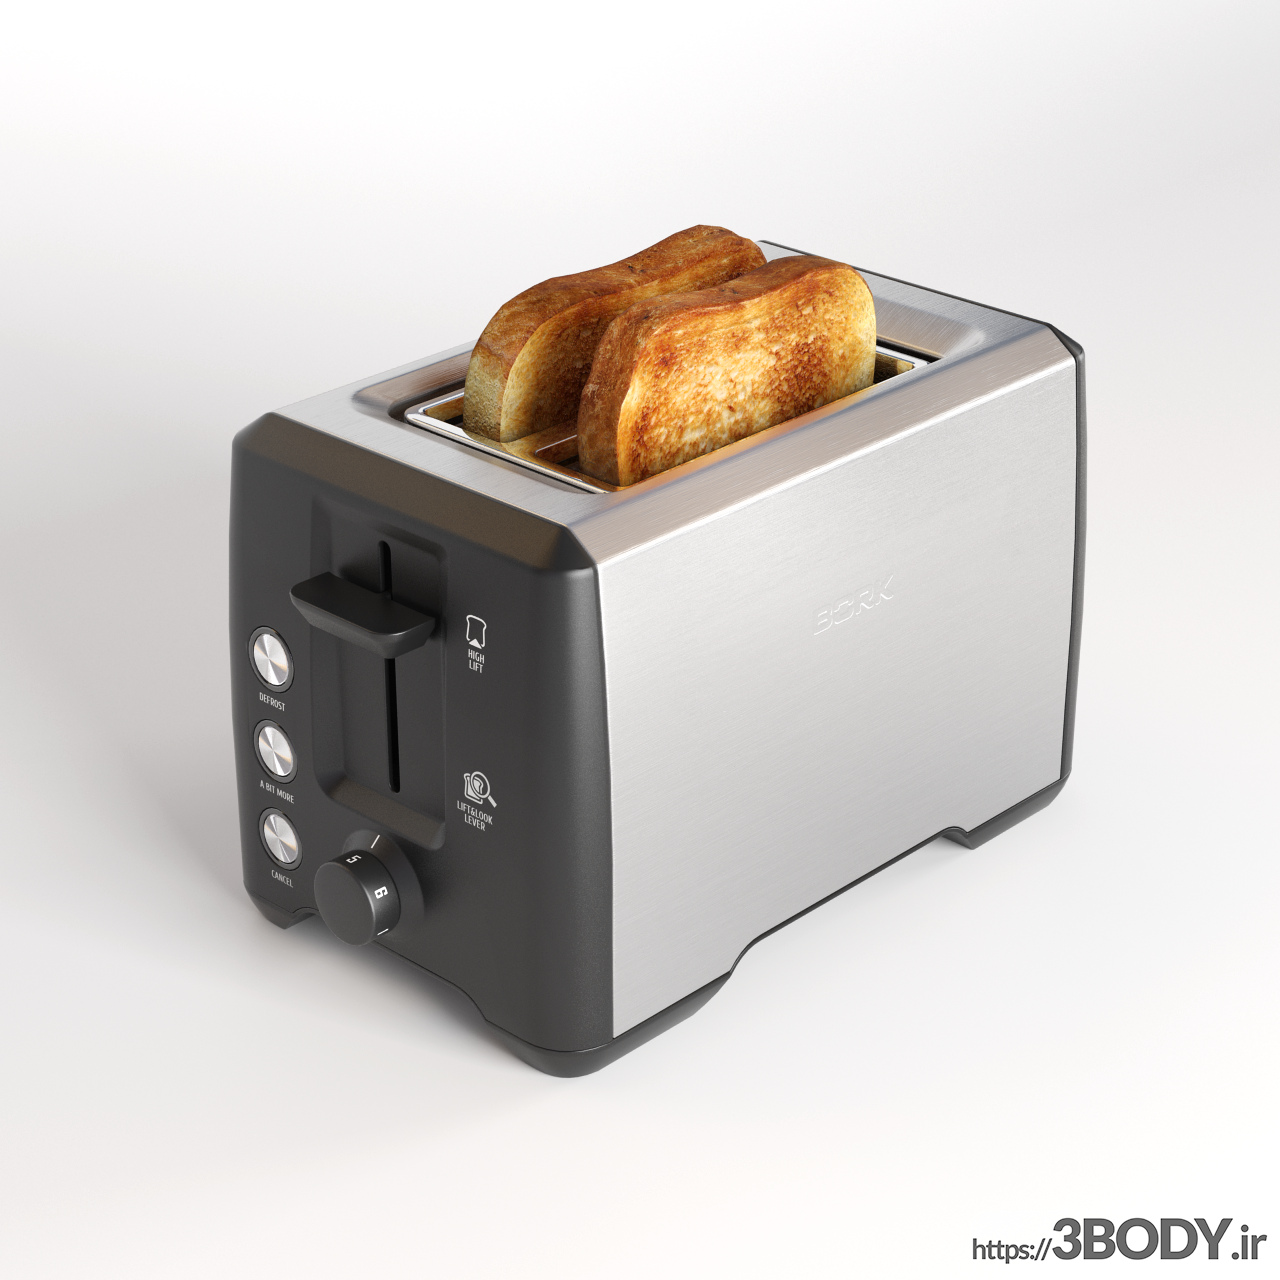 مدل سه بعدی توستر نان عکس 1